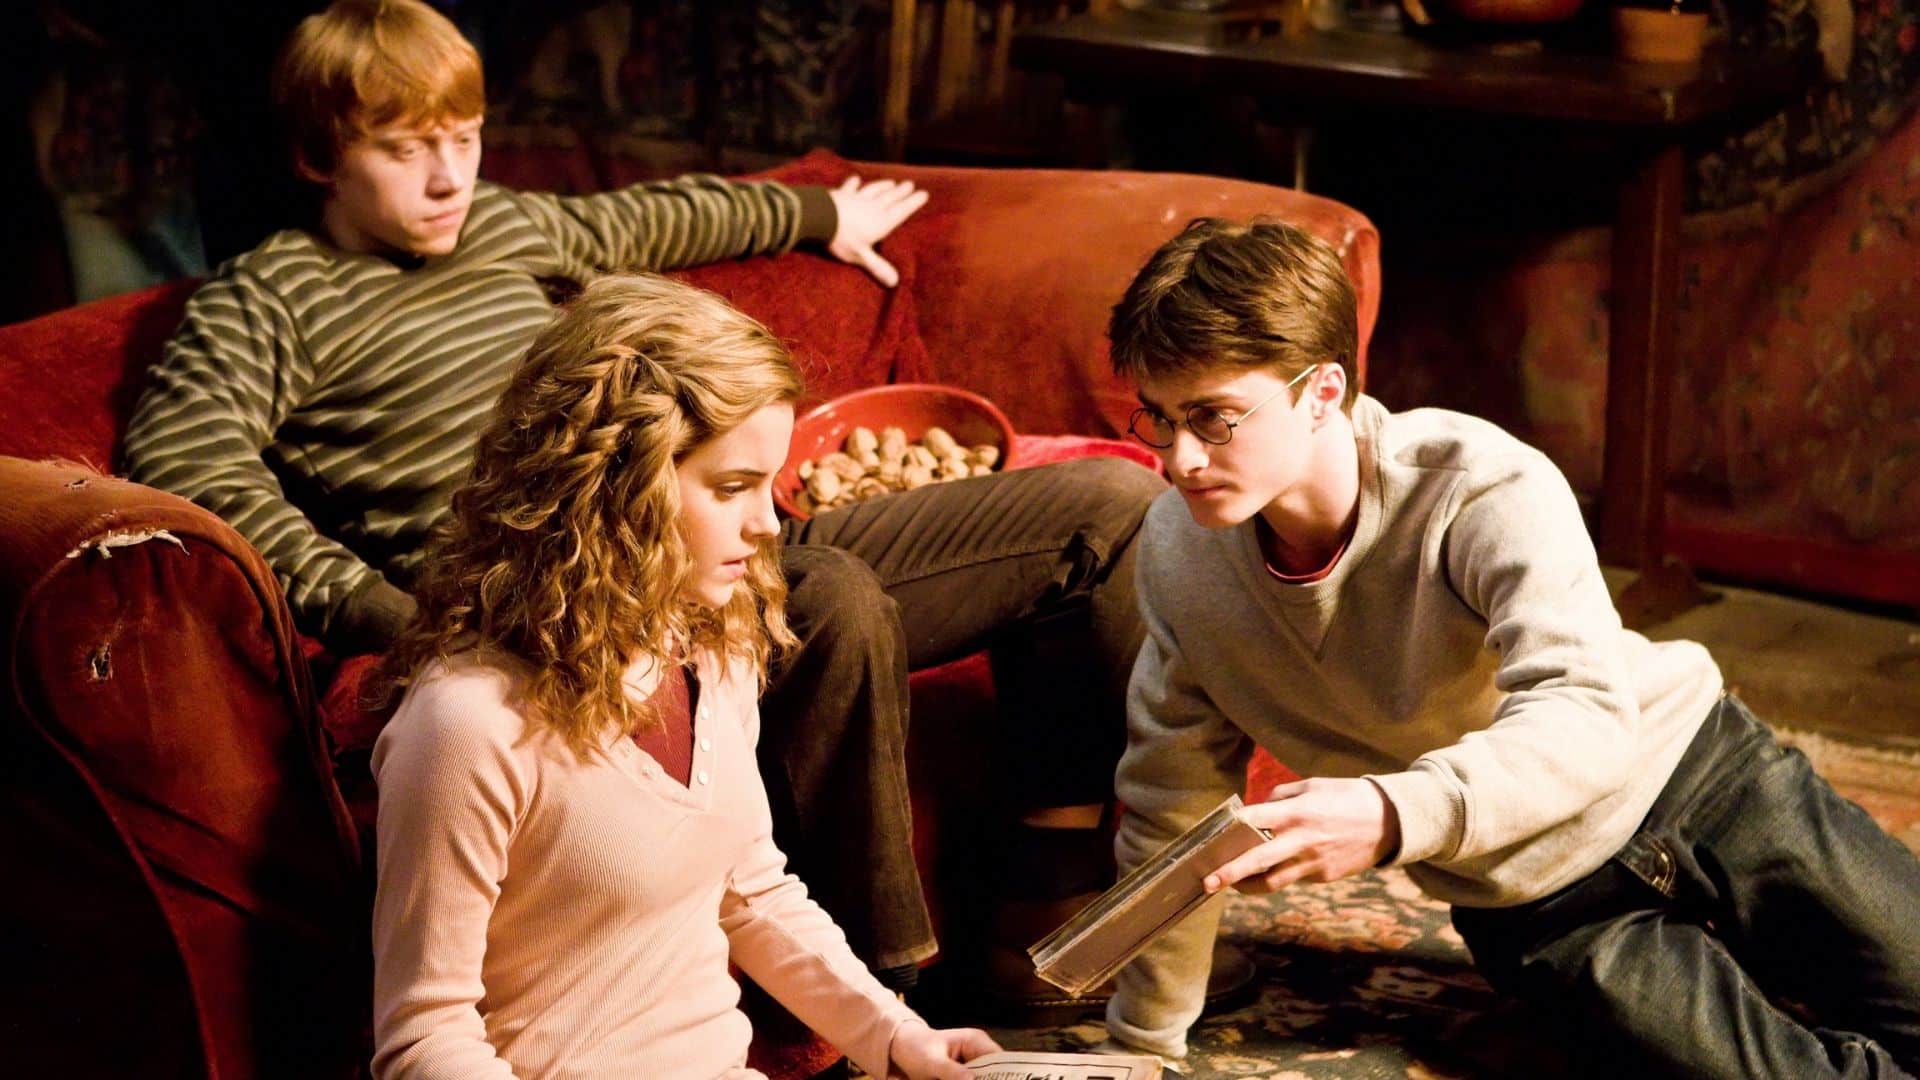 Harry Potter e il Principe Mezzosangue: le 5 scene tagliate. Perché nel film non si vede quel dettaglio su Silente?